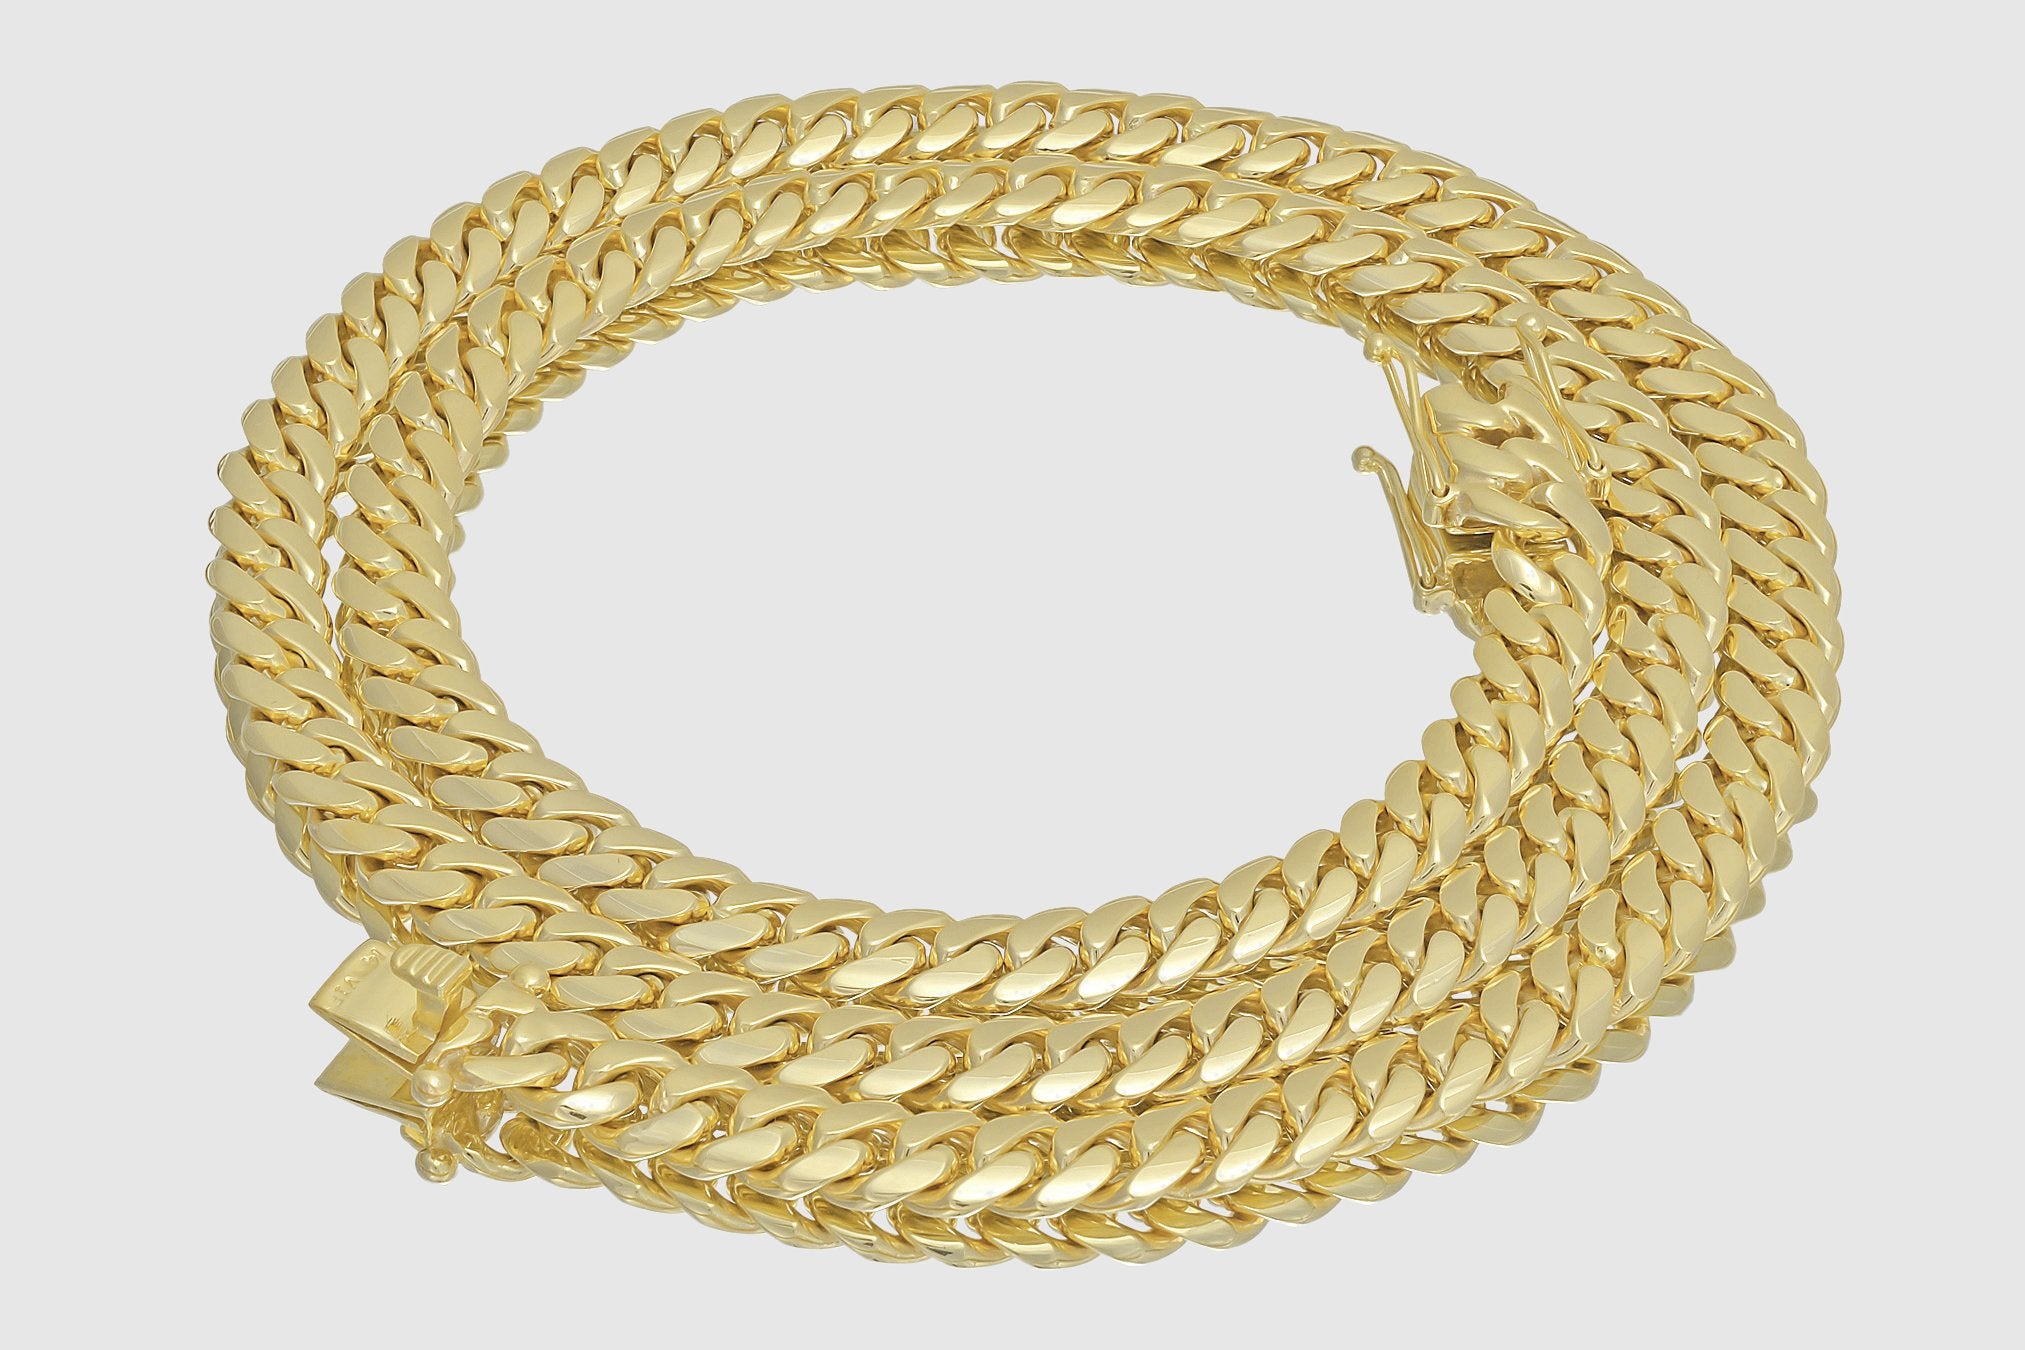 Solid Gold Cuban Link Necklace 14K - 18K